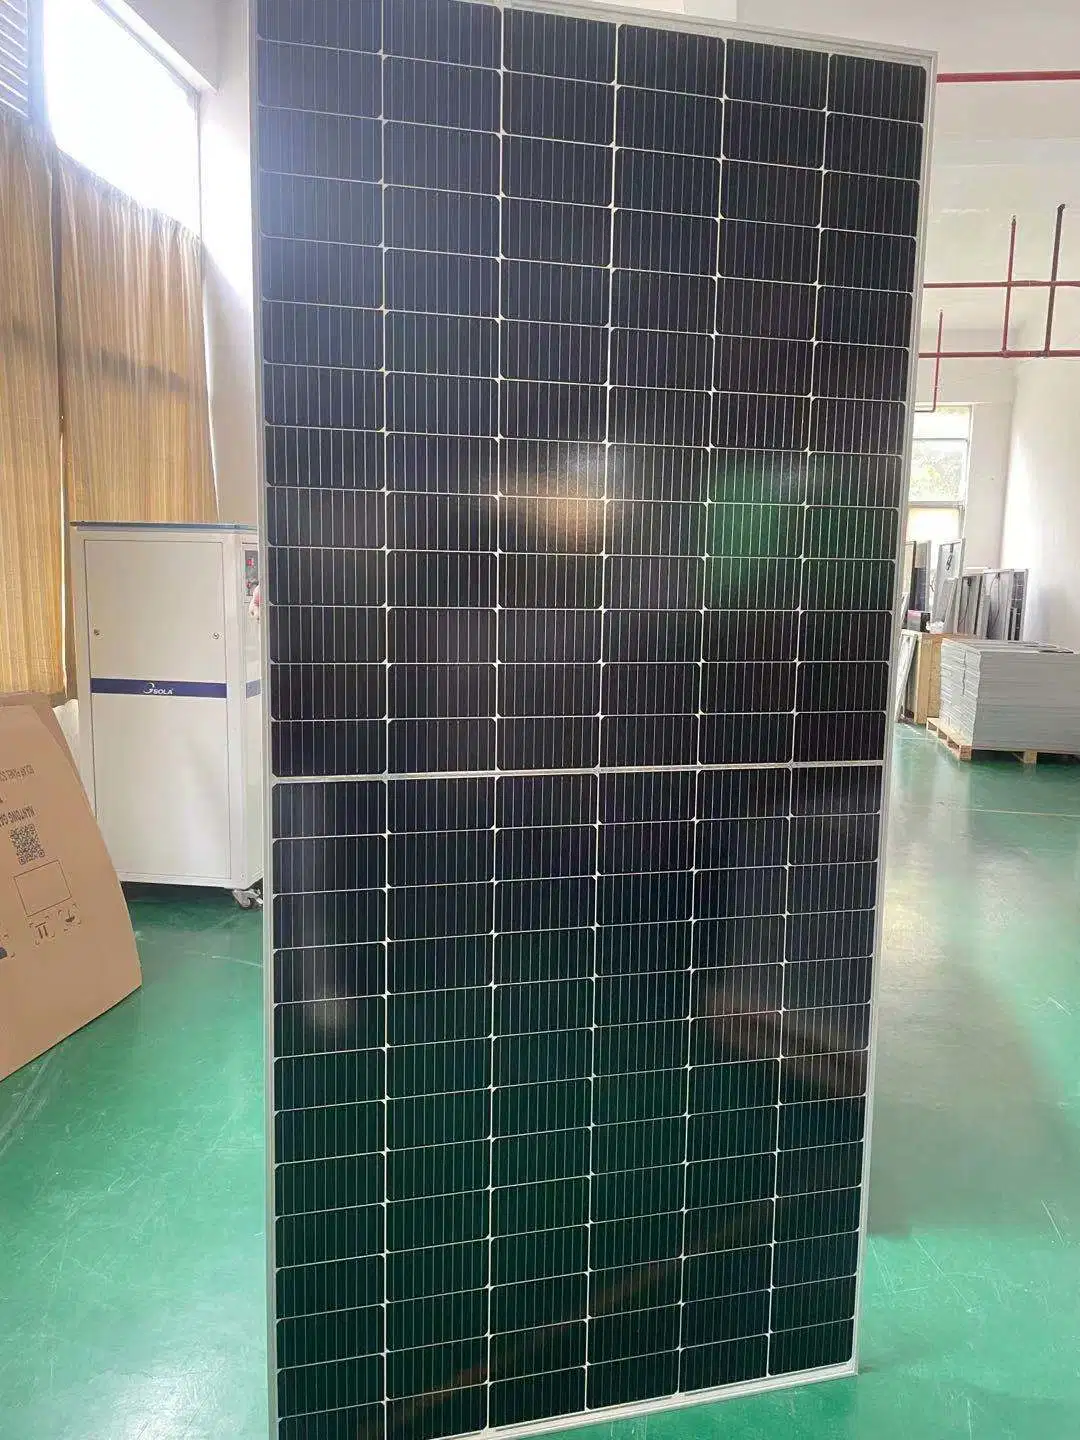 China Factory 590W Monocrystalline Solar Panel with 120W Solar Panel Cells for Industry Solar Power Panel System 490W 500W 530W 540W 550W 560W 570W 580W